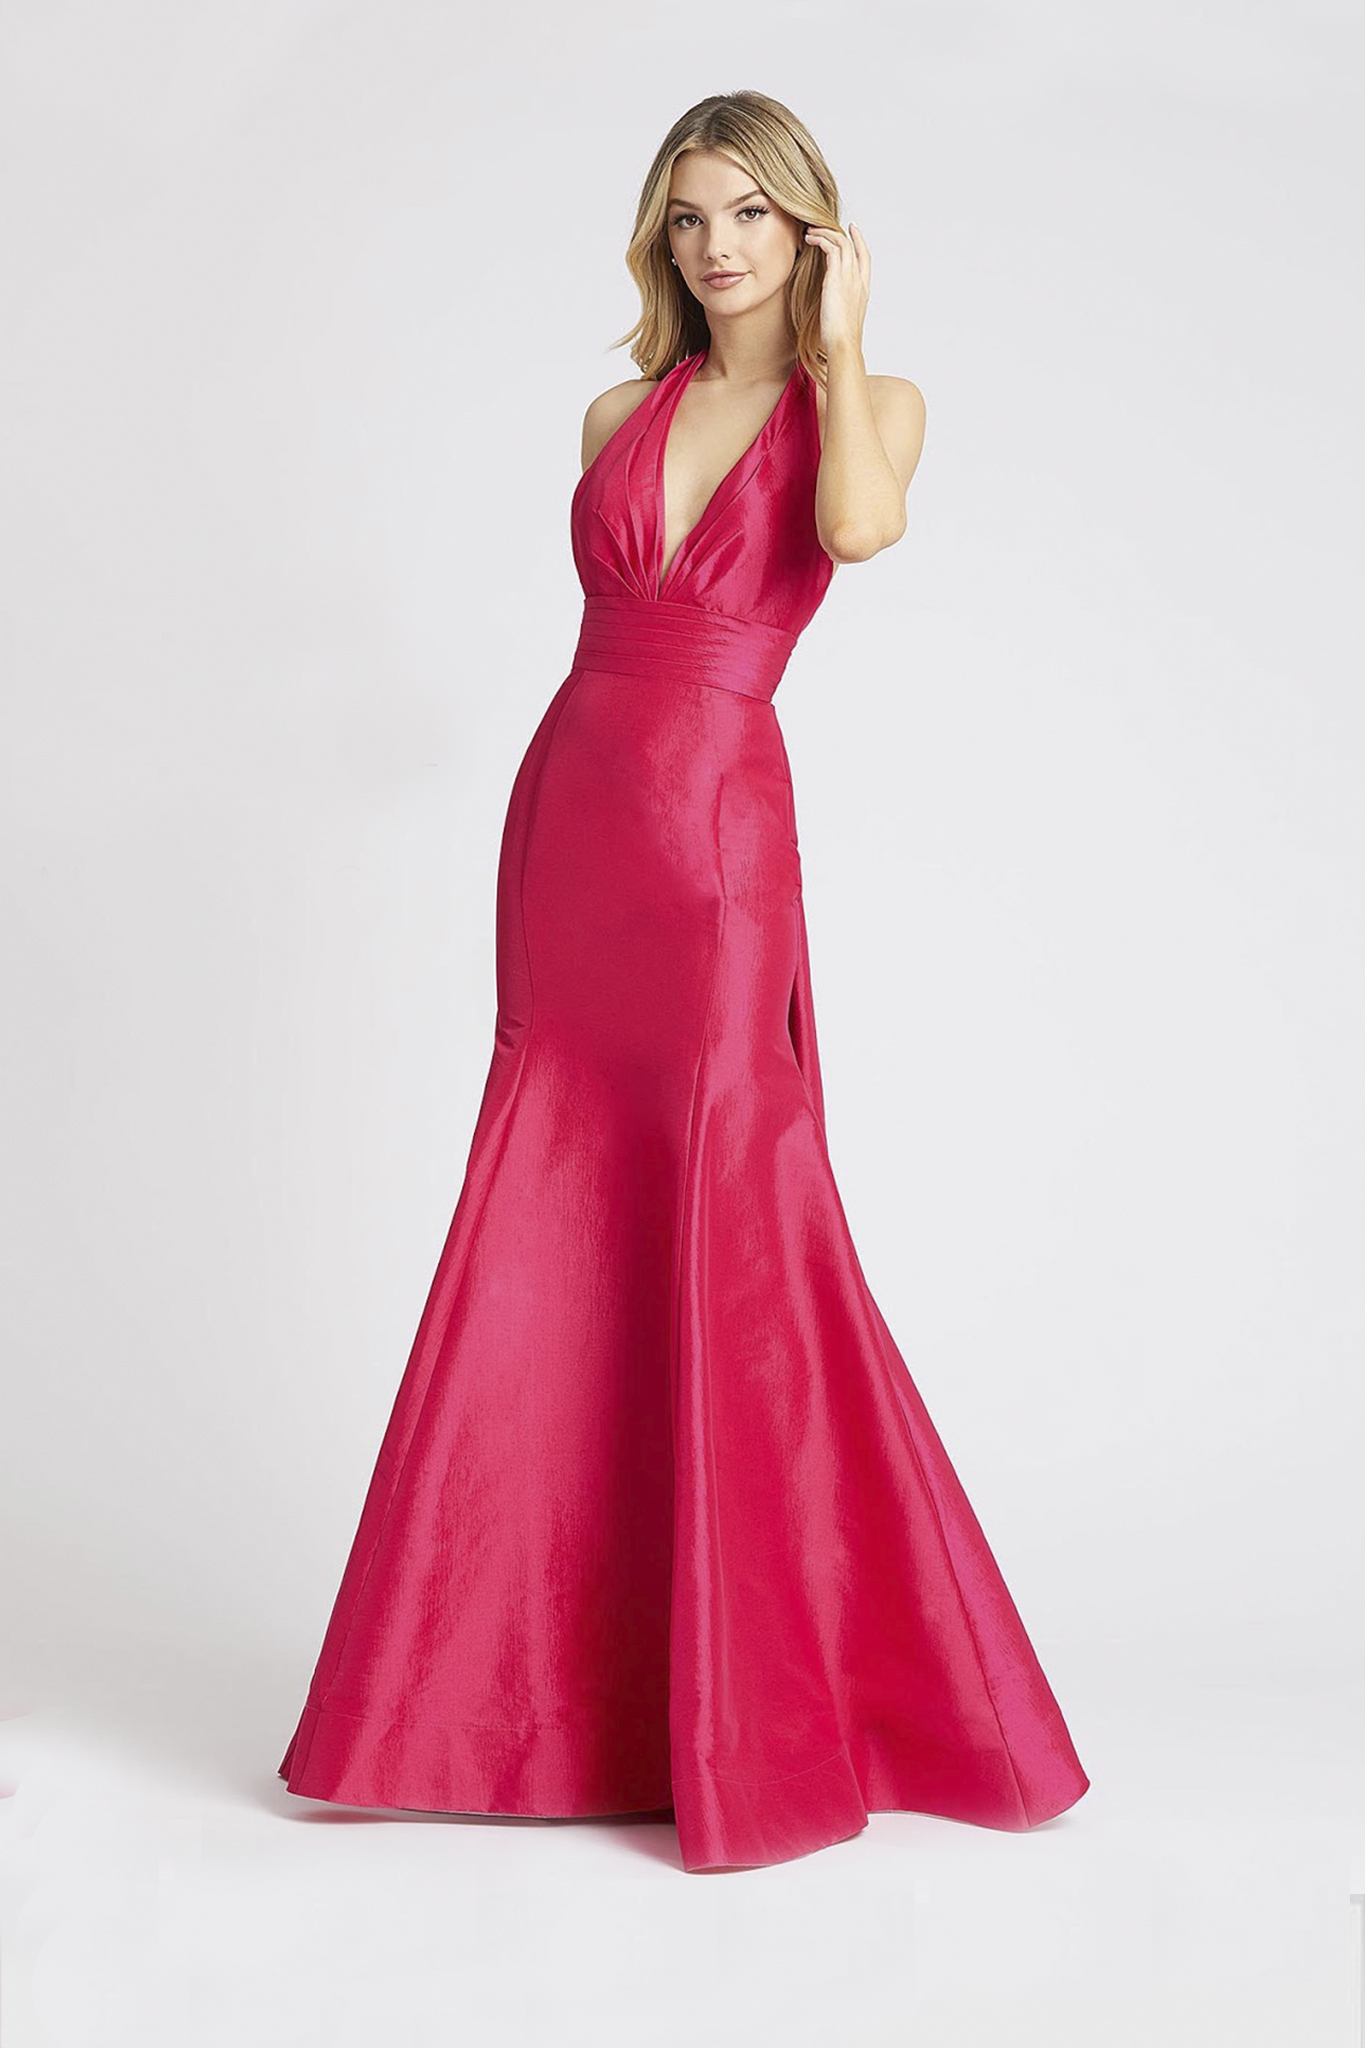 Длинное платье в розовом цвете с вырезом на спине